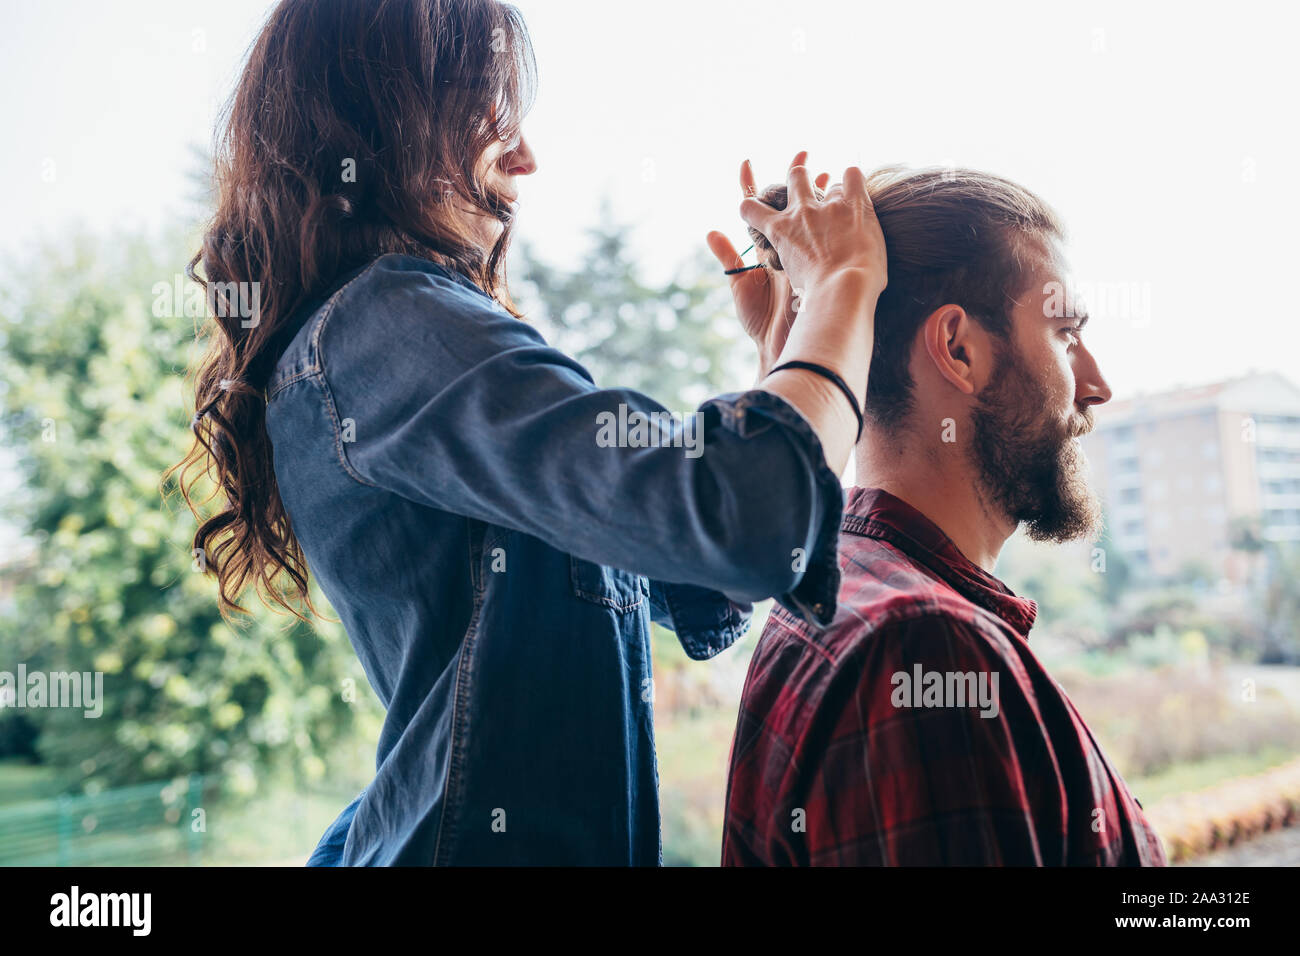 Mujer joven parado sobre una silla haciendo moño de cabello a su taller novio - ayuda, compañerismo, Care Concept Foto de stock